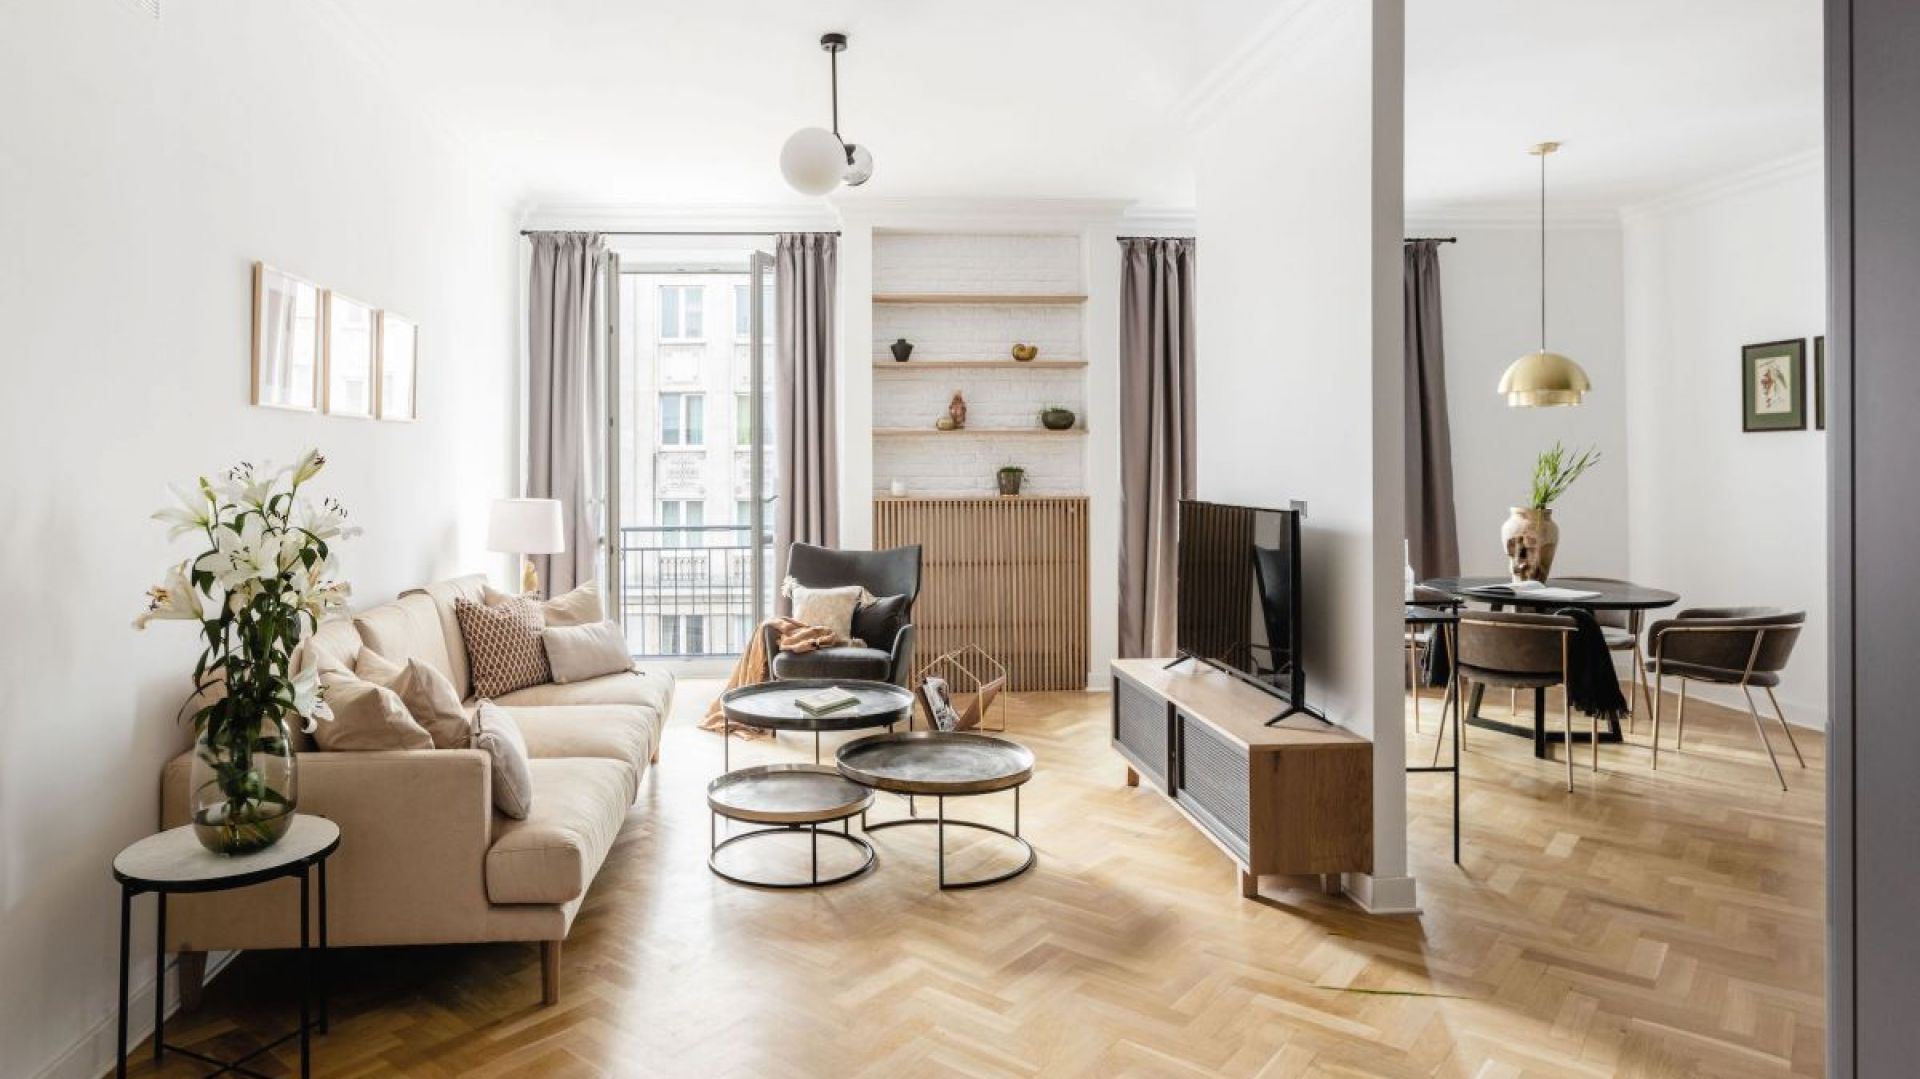 Mieszkanie w Warszawie urządzone w skandynawskim stylu